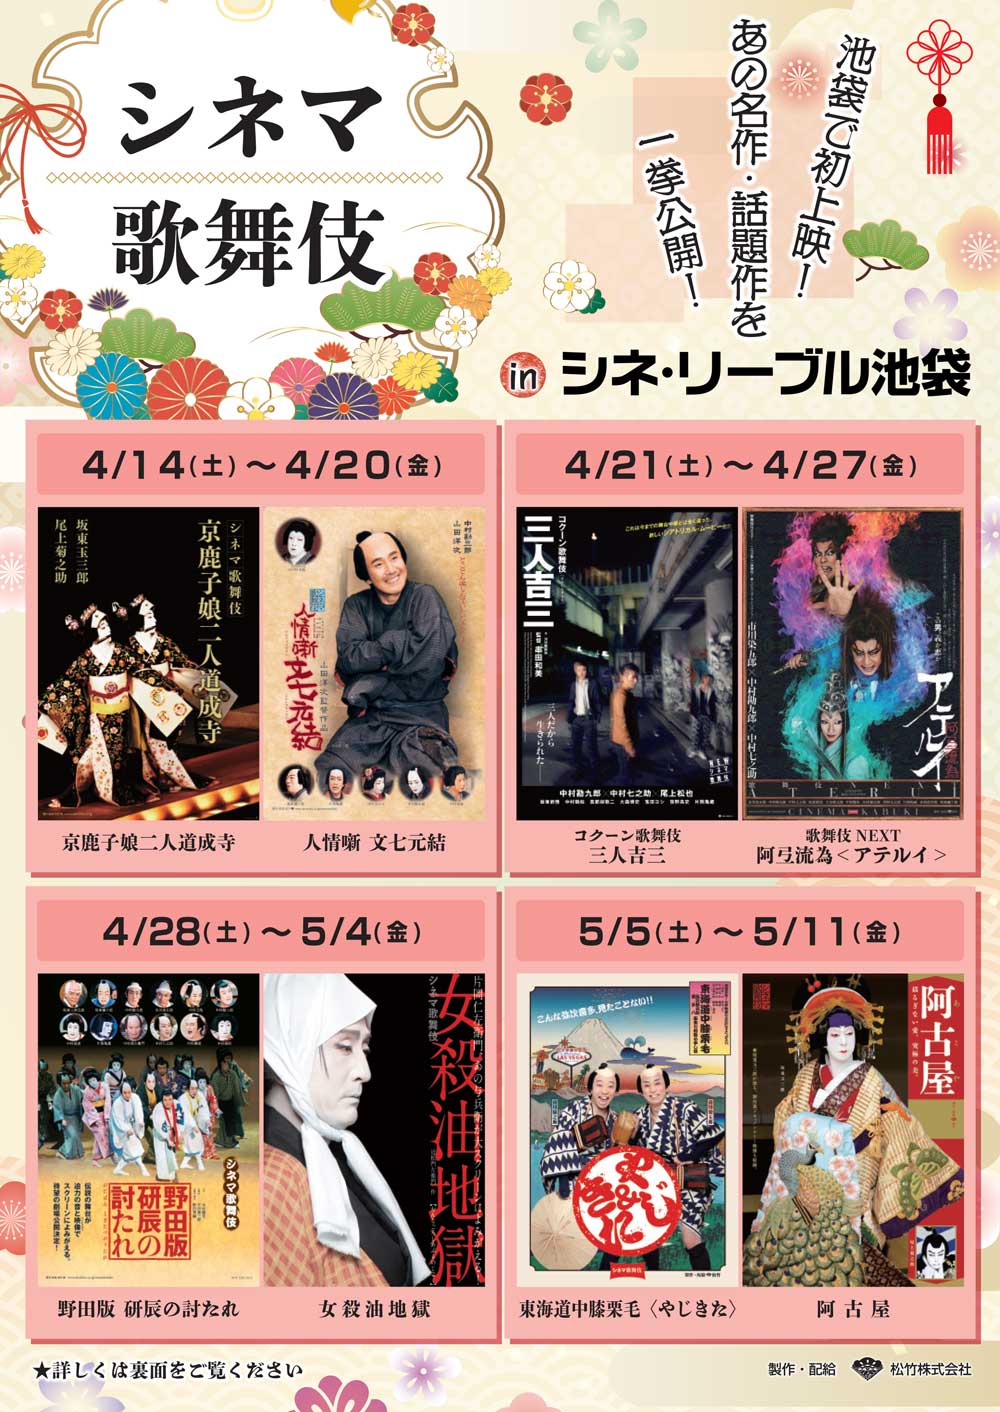 シネマ歌舞伎特集上映がシネ・リーブル池袋で